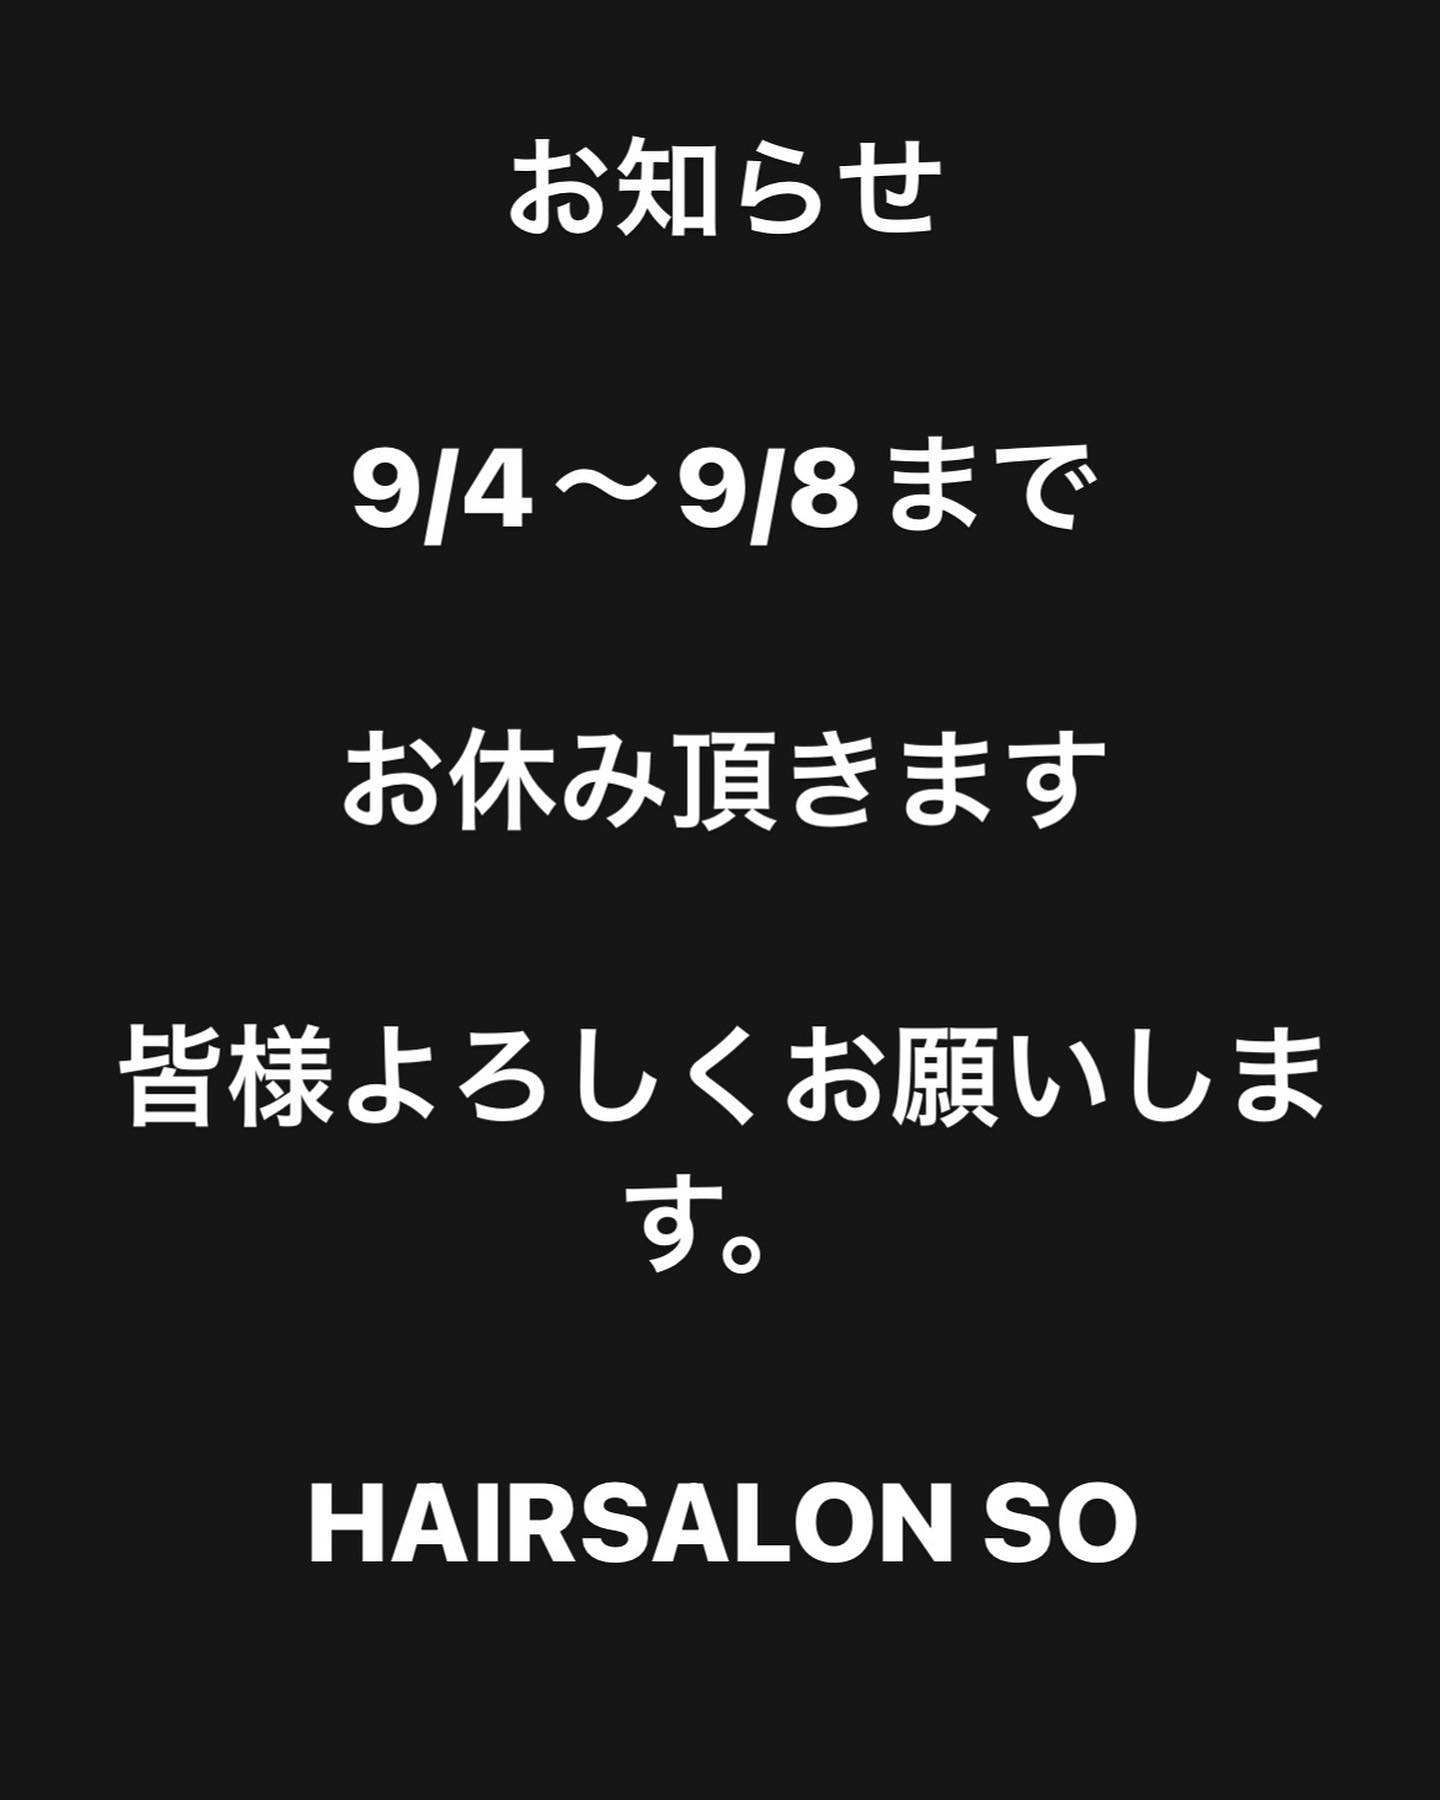 こんにちは♪
HAIR SALON SOです。
・
・
9月4日(月曜日)〜9月8日(金曜日)まで
店長菅原の一時帰国の為、お休み頂きます。
大変ご不便をお掛けしますが、皆様よろしくお願いします‍♀️
・
・
お問い合わせ
TEL 065-530-3466
LINEhairsalonso
・
・  Hello♪
This is HAIR SALON SO.
・
・
September 4th (Monday) to September 8th (Friday)
We will be closed due to the temporary return of the store manager, Sugawara.
We apologize for the inconvenience, but thank you for your support‍♀️
・
・
inquiry
TEL 065-530-3466
LINEhair salon  #hairsalonso